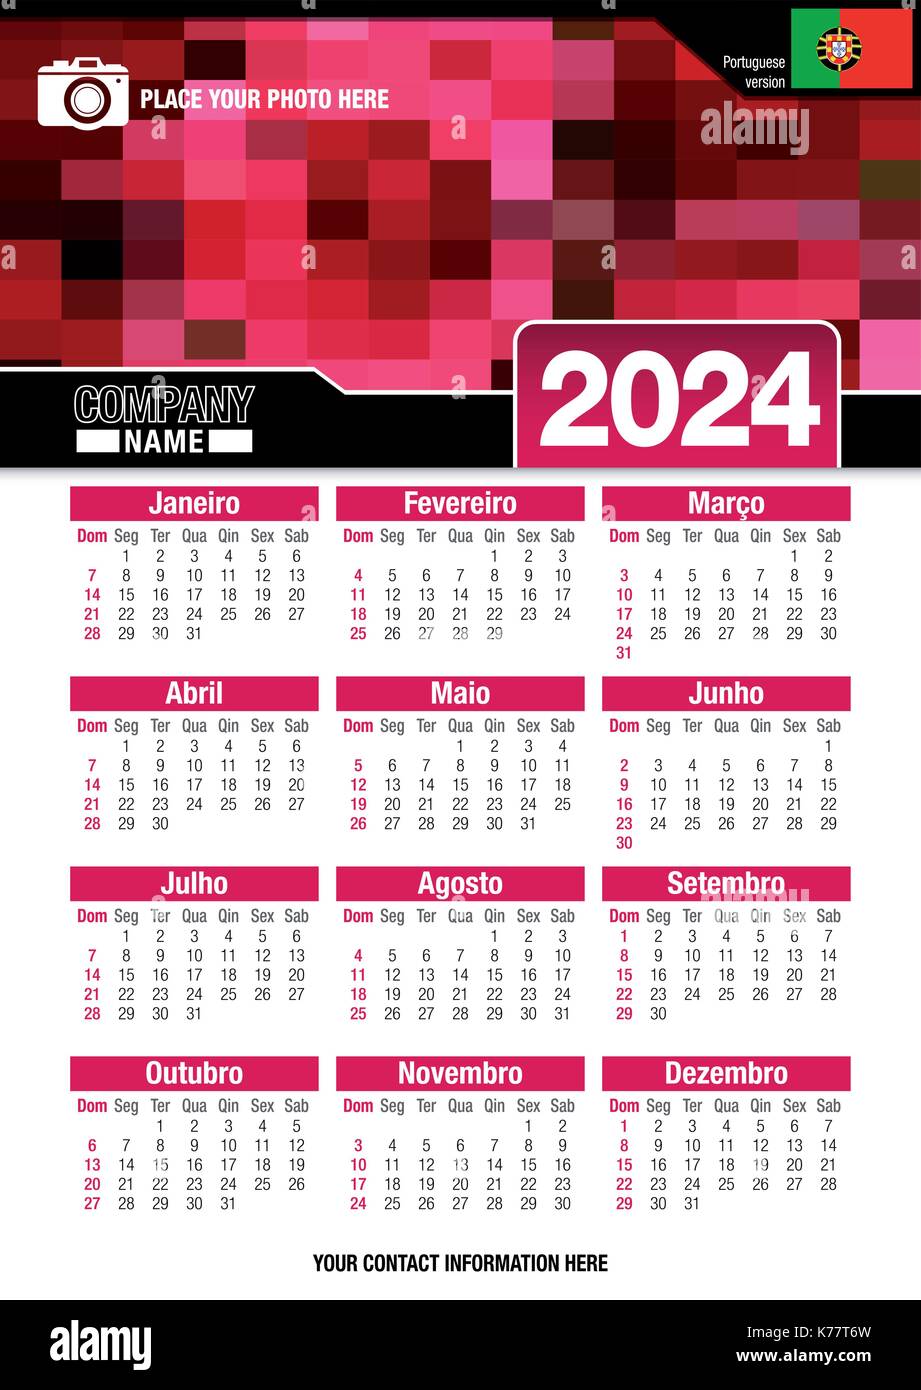 Utile calendario da parete 2024 con design di colori rosso mosaico. Formato A4 verticale. Dimensioni: 210mm x 297mm. Versione portoghese - immagine vettoriale Illustrazione Vettoriale